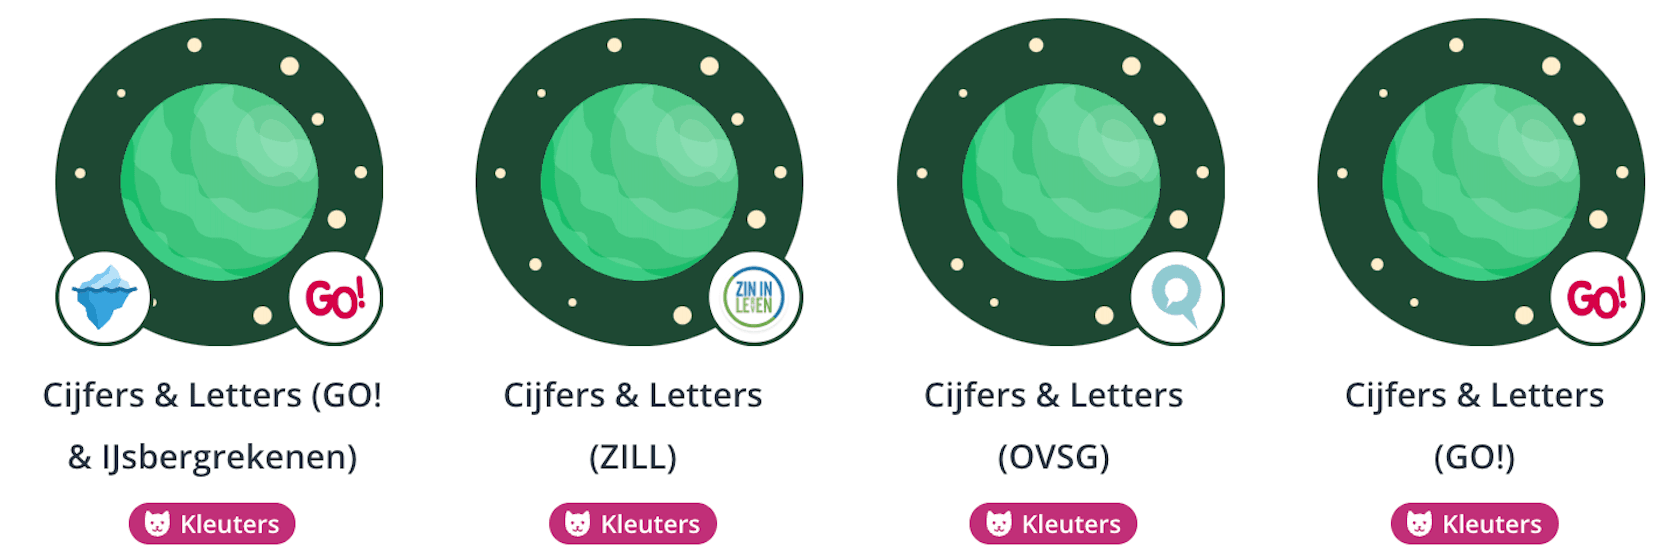 Cijfers & Letters Vlaanderen